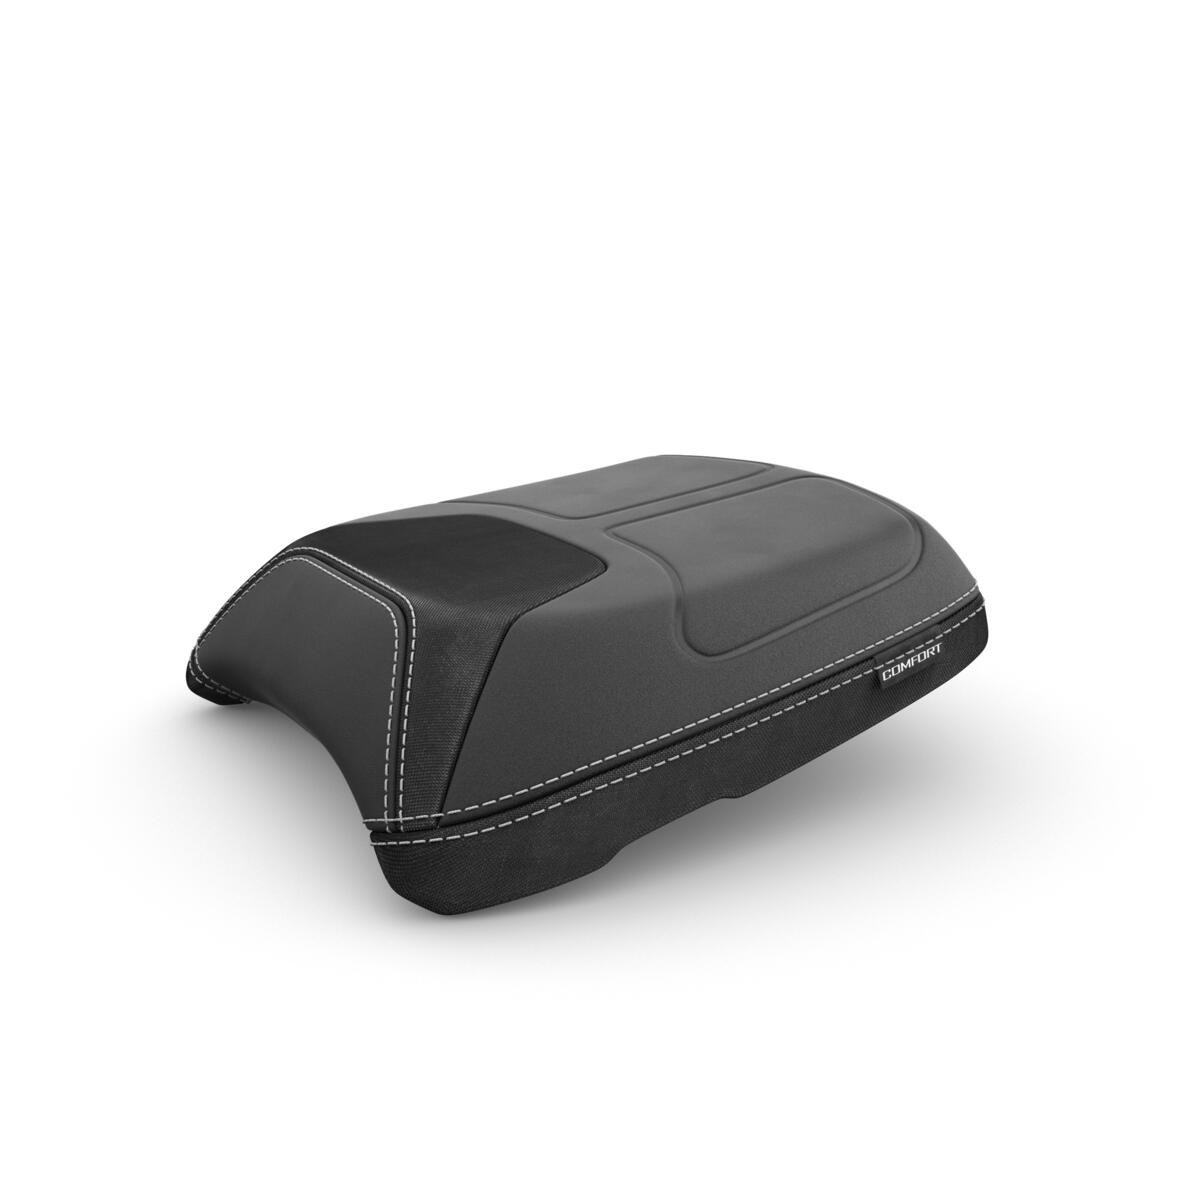 Špičkové cestovné vybavenie pre váš model TRACER 9, aby ste mohli vyraziť na cestu pripravení na všetko. Vysoký plexi štít, vyhrievané rukoväte a vyhrievané pohodlné sedadlo poskytujú mimoriadne pohodlie na jazdu po nekonečných cestách. V prípade, že potrebujete ešte väčšiu ochranu pred vetrom, obsahuje balík Travel Pack Pro aj prídavný plexi štít, ktorý vás lepšie ochráni. Bočné kufre a horný kufor predstavujú dokonalý spôsob, ako si na cestu vziať všetko potrebné. Jednoducho si nabite telefón alebo navigáciu GPS pomocou nabíjačky USB a majte neustále prehľad o tlaku v pneumatikách pomocou nástroja na jeho monitorovanie. Súprava obsahuje aj vyhradený GPS držiak, ktorý vám pomôže bezpečne upevniť navigačné zariadenie. Nadstavec bočného stojana prináša motocyklu väčšiu stabilitu pri parkovaní na akomkoľvek povrchu, kryt chladiča chráni chladič pred nepríjemnými kameňmi a štrkom na ceste a kryt motora poskytuje ochranu pred prípadnými pádmi. Hmlové svetlá LED zvyšujú viditeľnosť za zlého počasia a zaisťujú tak optimálnu bezpečnosť. Postarali sme sa aj o to, aby si spolu s vami vychutnal jazdu aj spolujazdec. Ten má k dispozícii pohodlné sedadlo s opierkou pre spolujazdca.